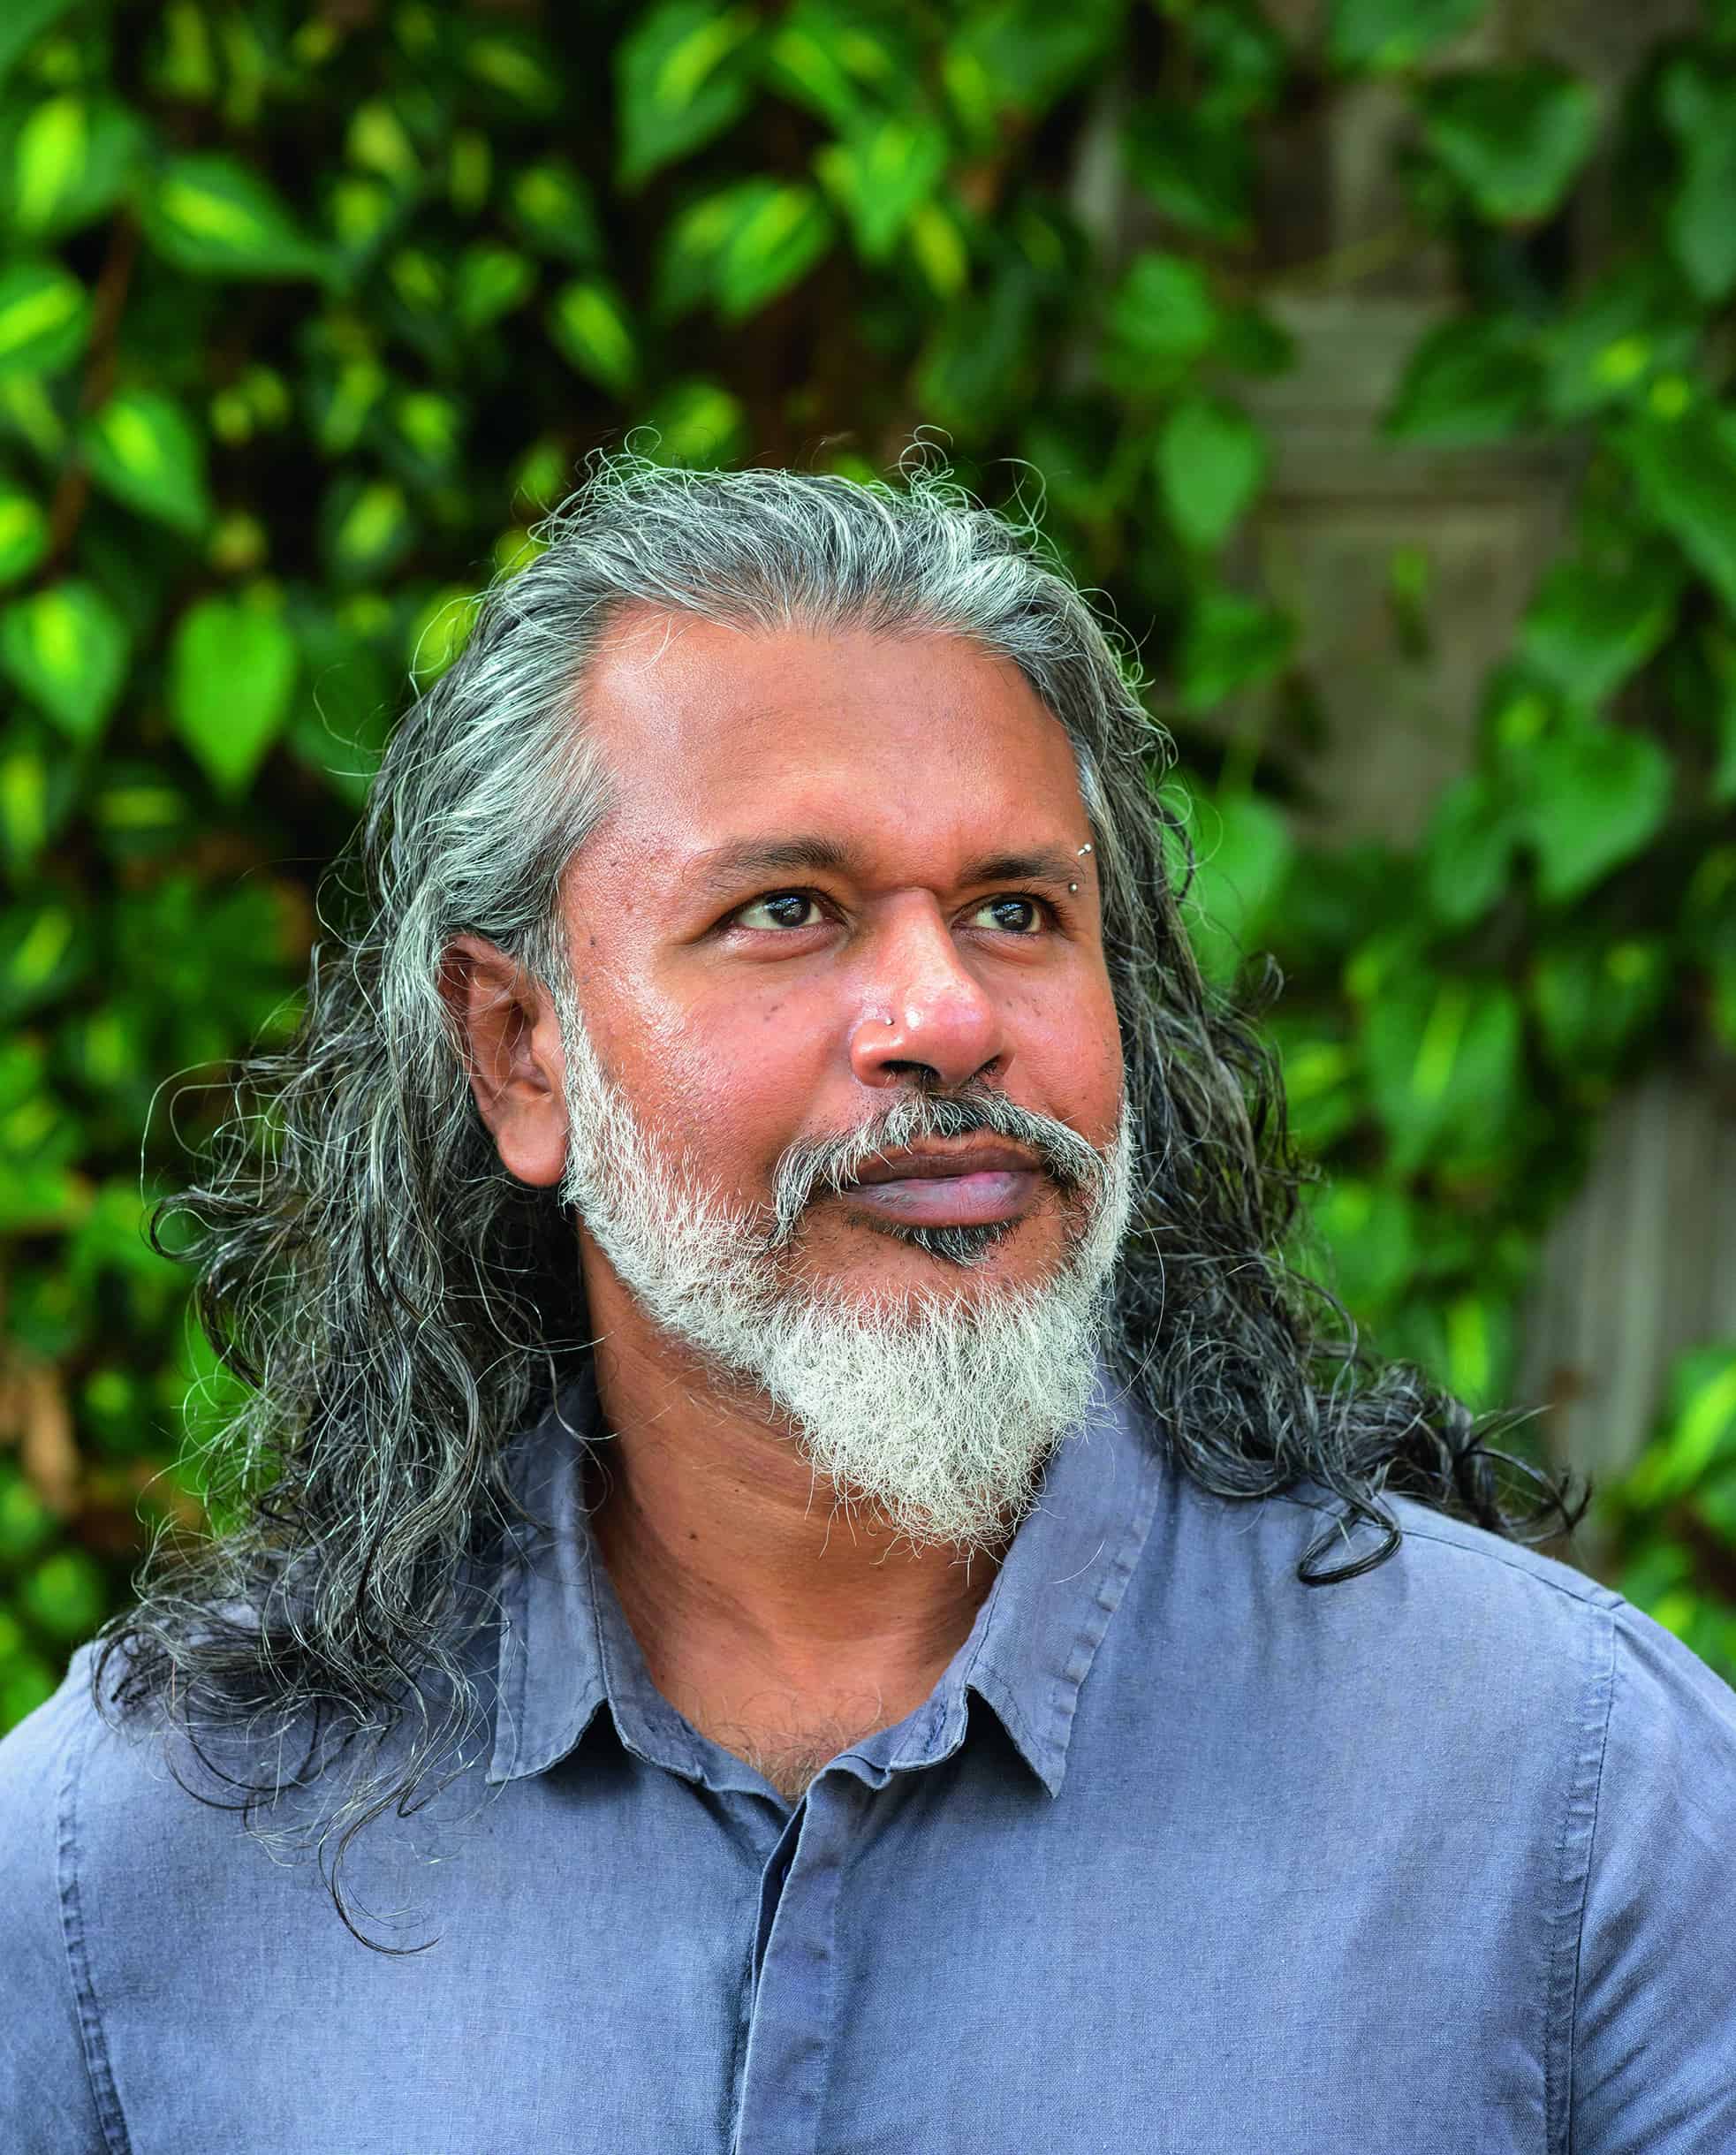 Shehan Karunatilak - a long-haired, bearded South Asian man in his 40s wearing a blue shirt